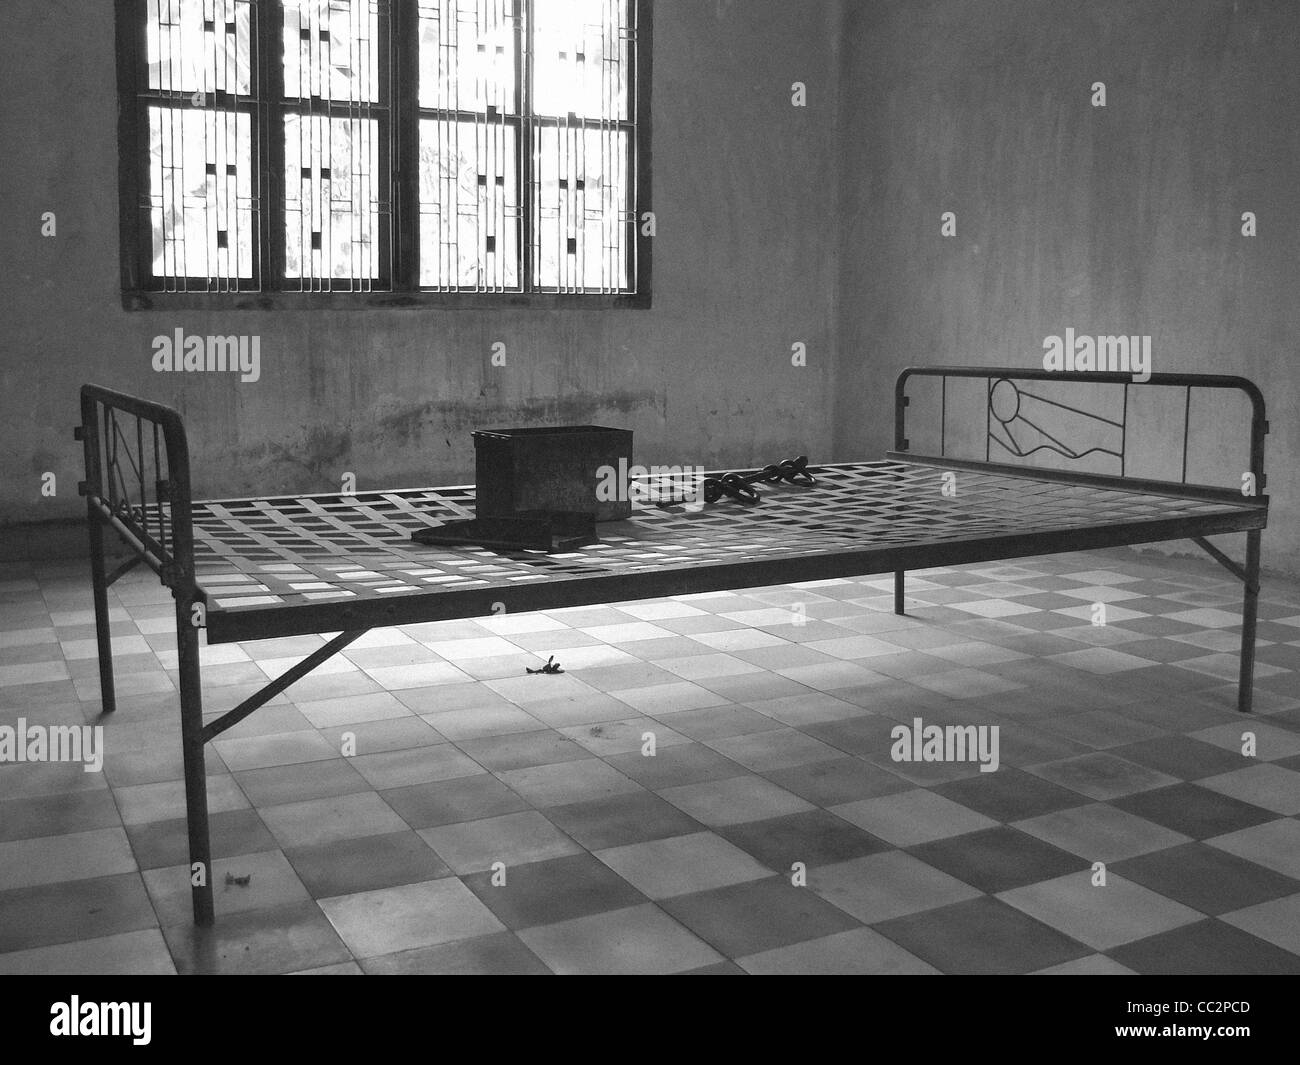 Vues en noir et blanc à l'intérieur de la prison des Khmers S-21 à Phnom Penh, Cambodge Banque D'Images